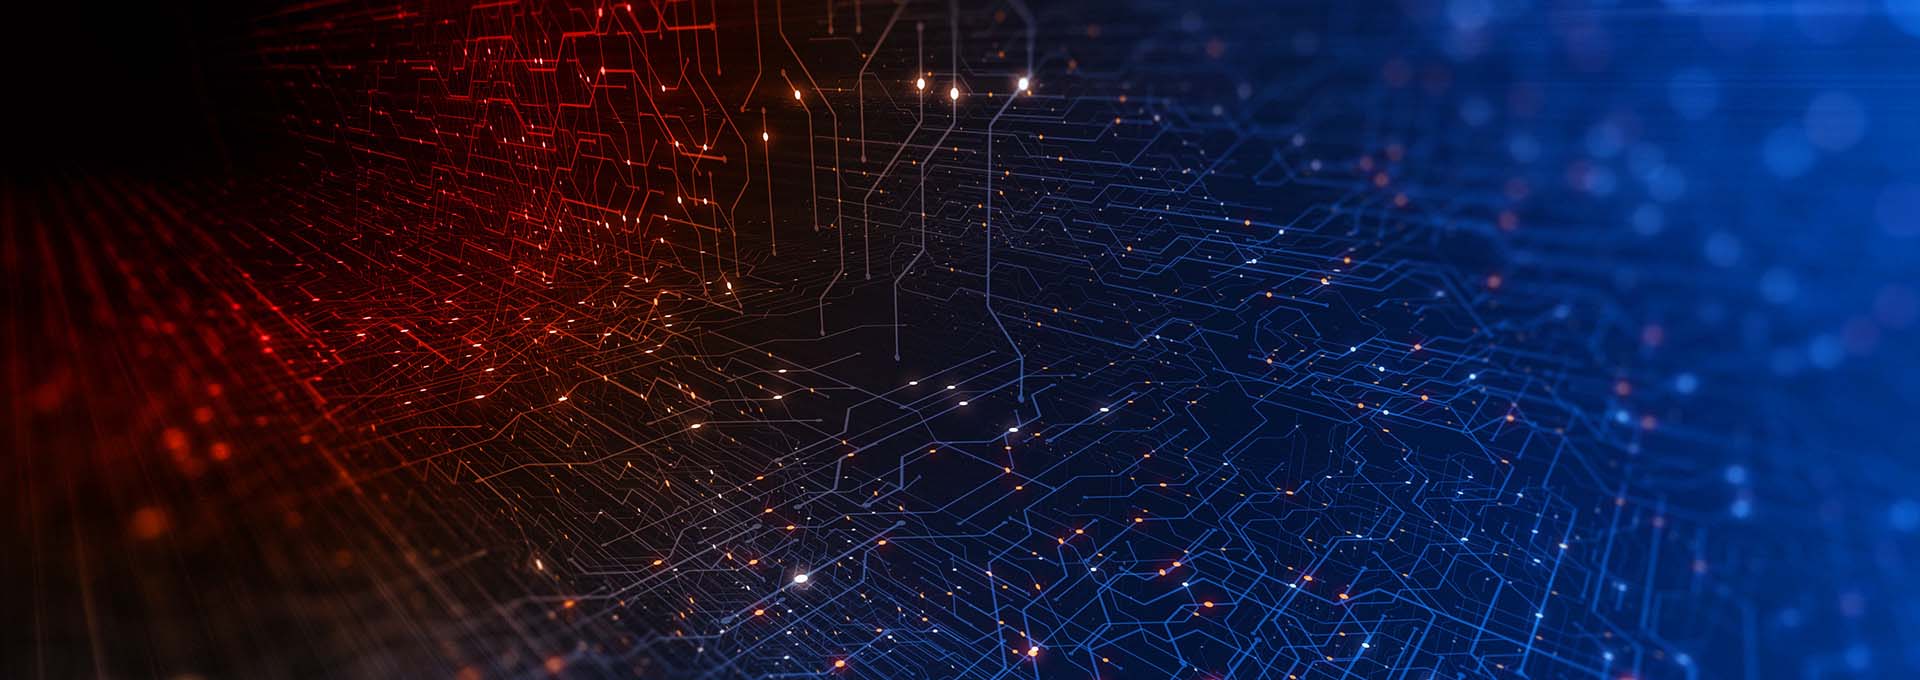 Un réseau de points connectés illuminés en rouge et bleu symbolisant le monde numérique de notre logiciel d'adaptation Oasisnxt.